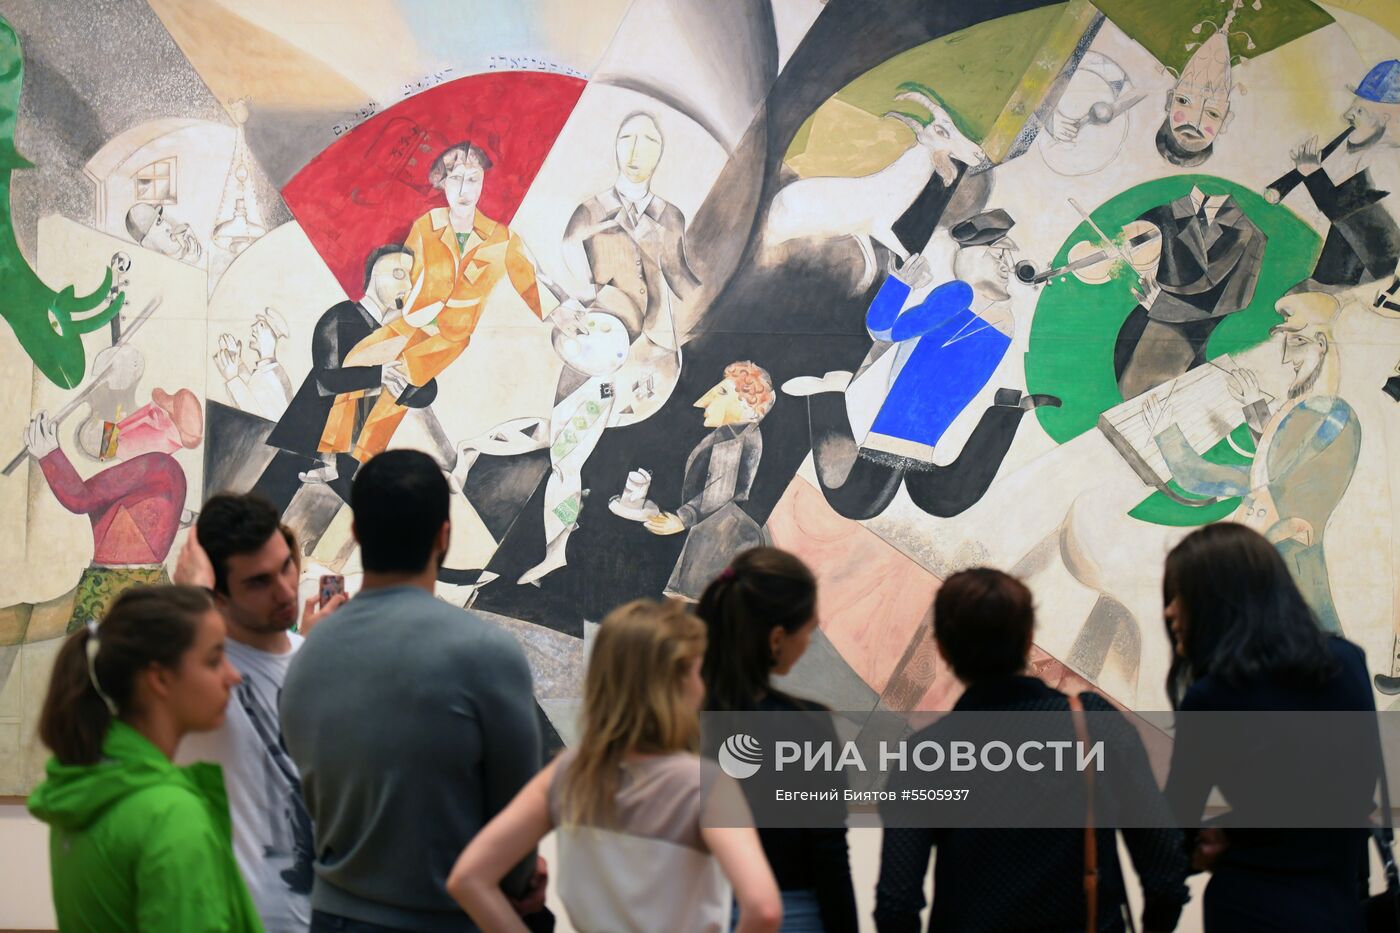 Акция "Ночь музеев" в Москве 